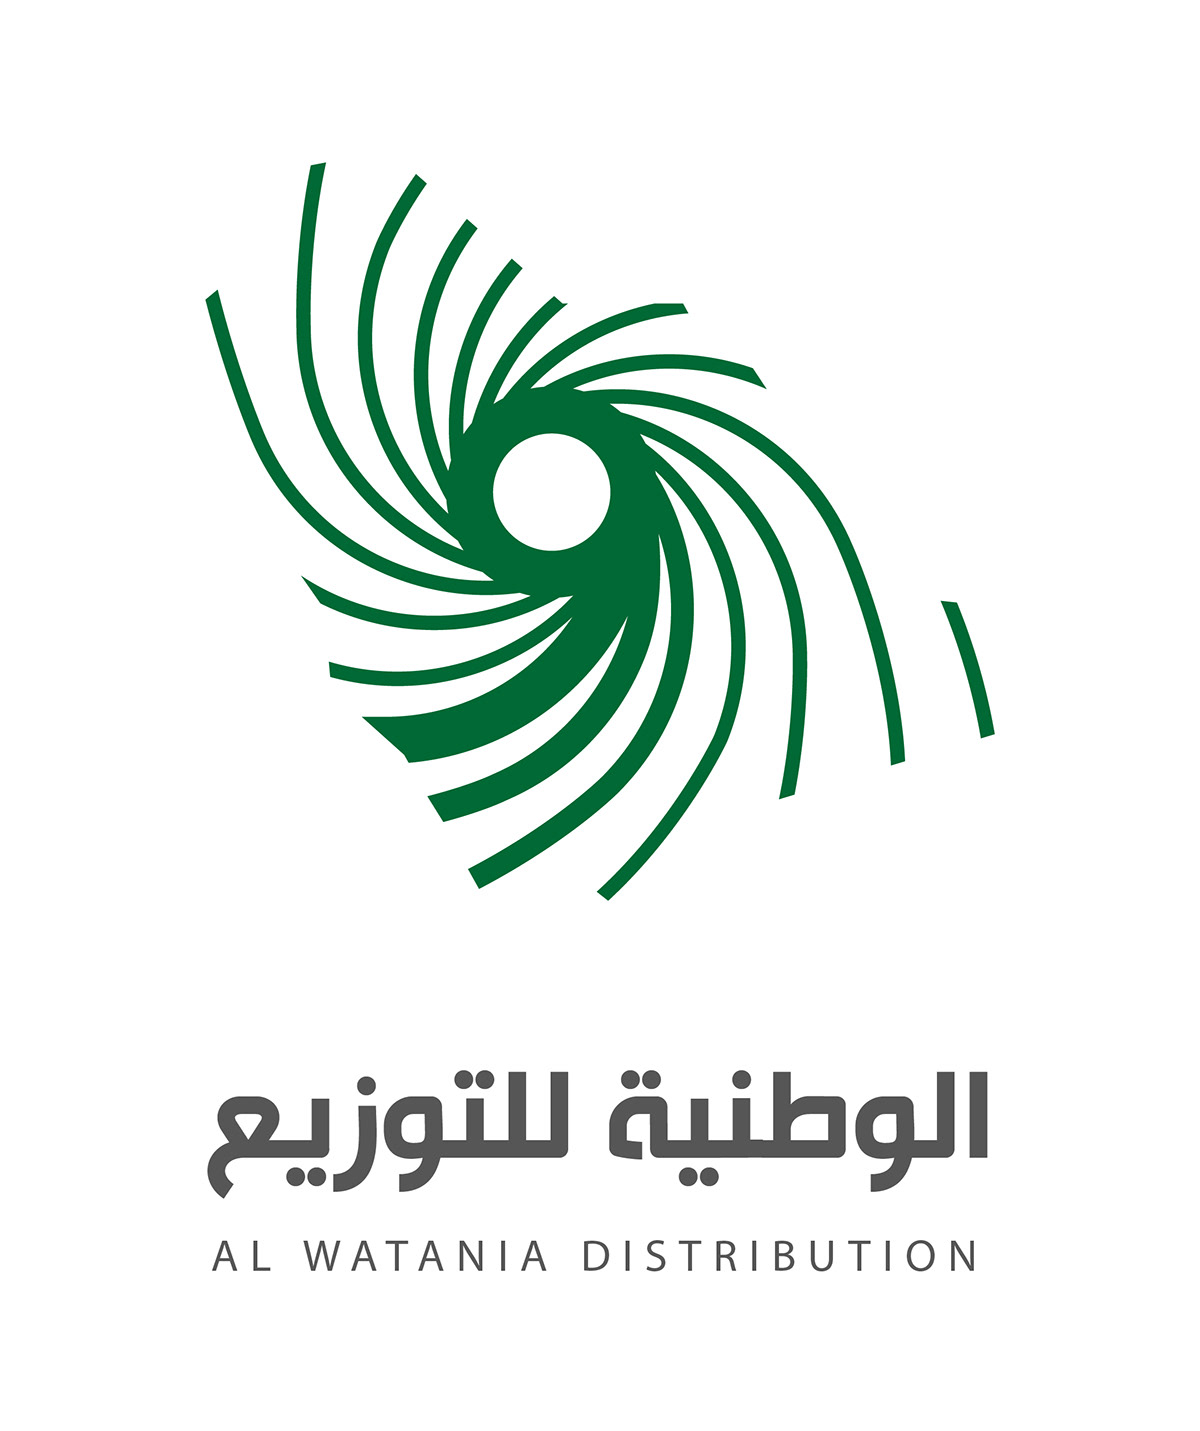 AL WATANIA DISTRIBUTION